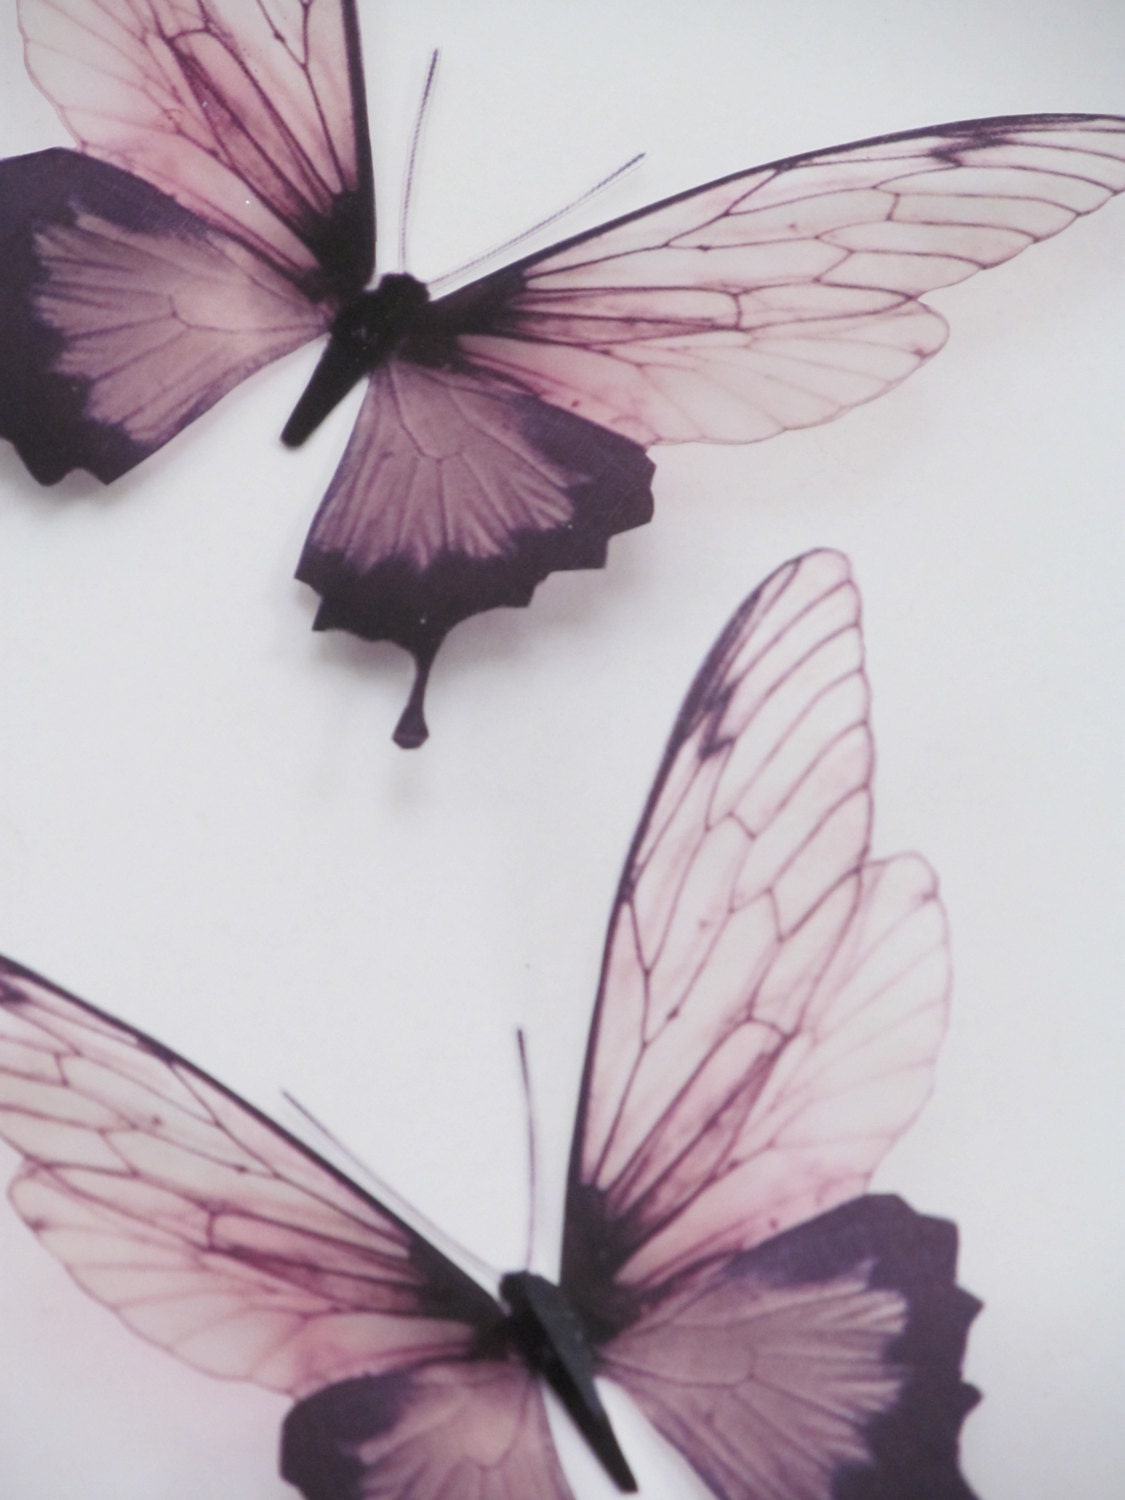 3 Luxury Amazing in Flight Butterflies  3D Butterfly  Wall Art